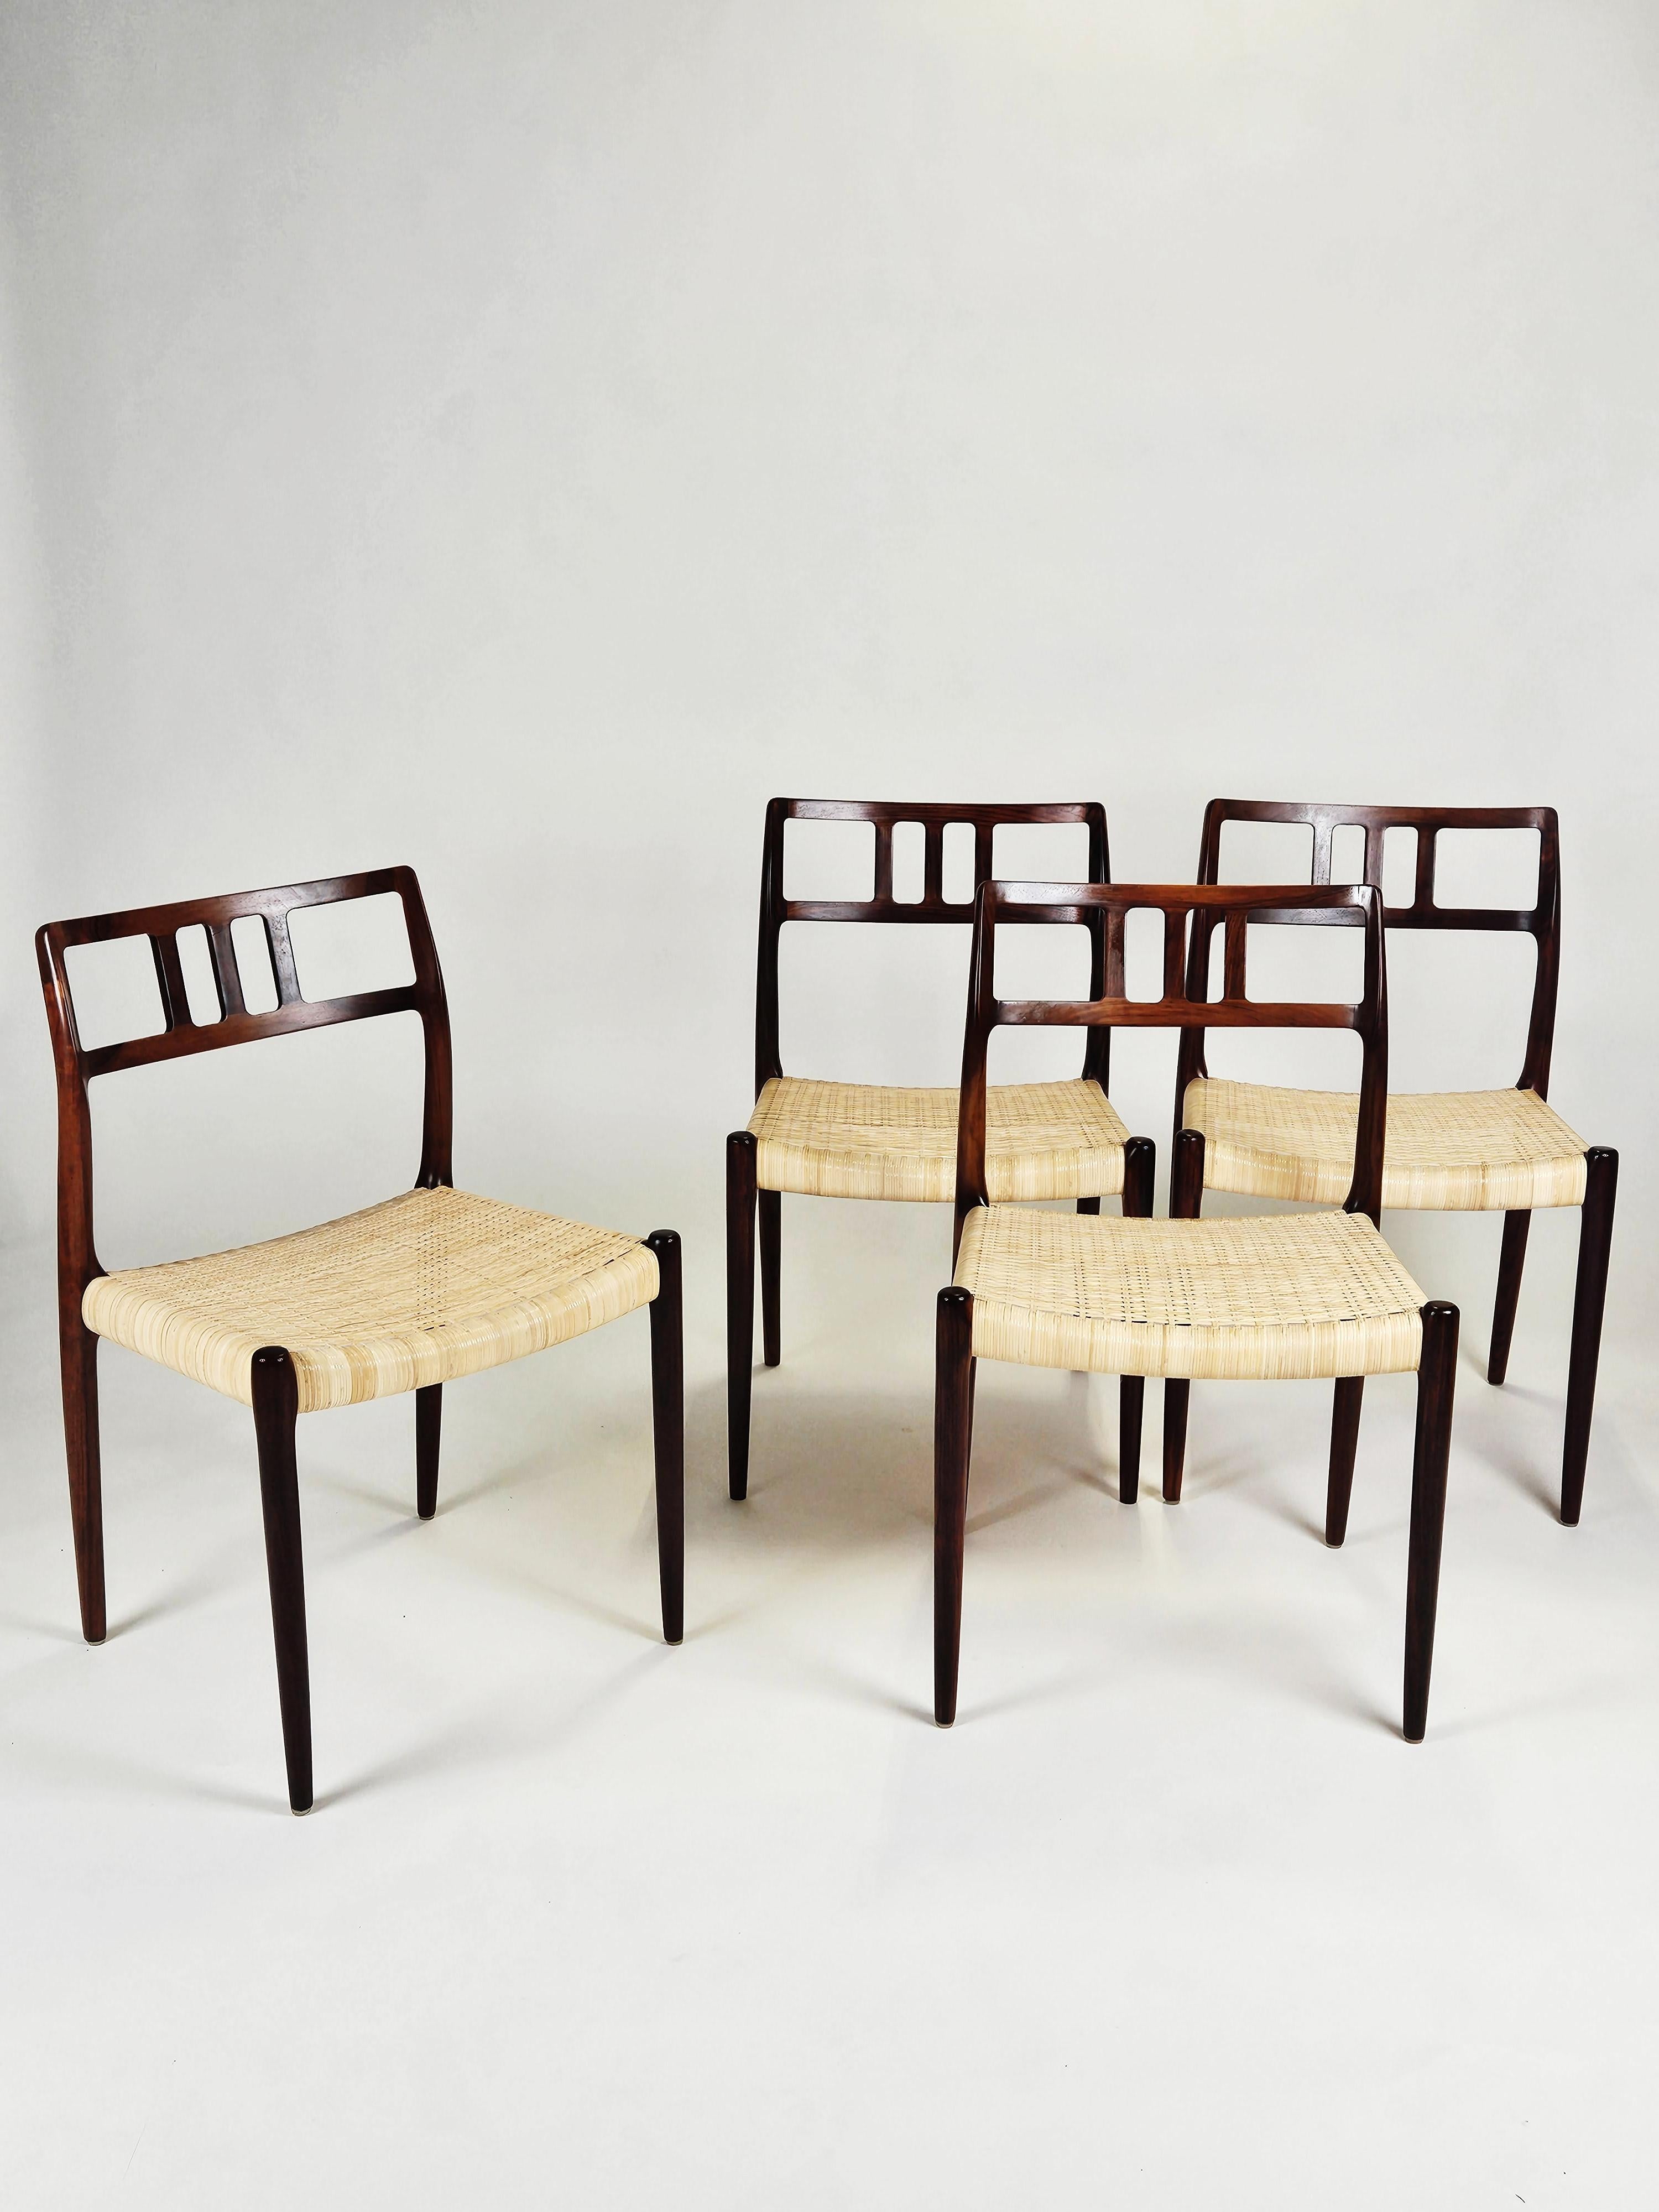 Großer Satz von 14 Esszimmerstühlen Modell 79, entworfen von Niels O. Møller. Produziert von der J.L Møllers møbelfabrik in Dänemark in den 1960er Jahren.

Hergestellt aus Palisanderholz mit Sitzen aus geflochtenem Rohr. 

In sehr gutem